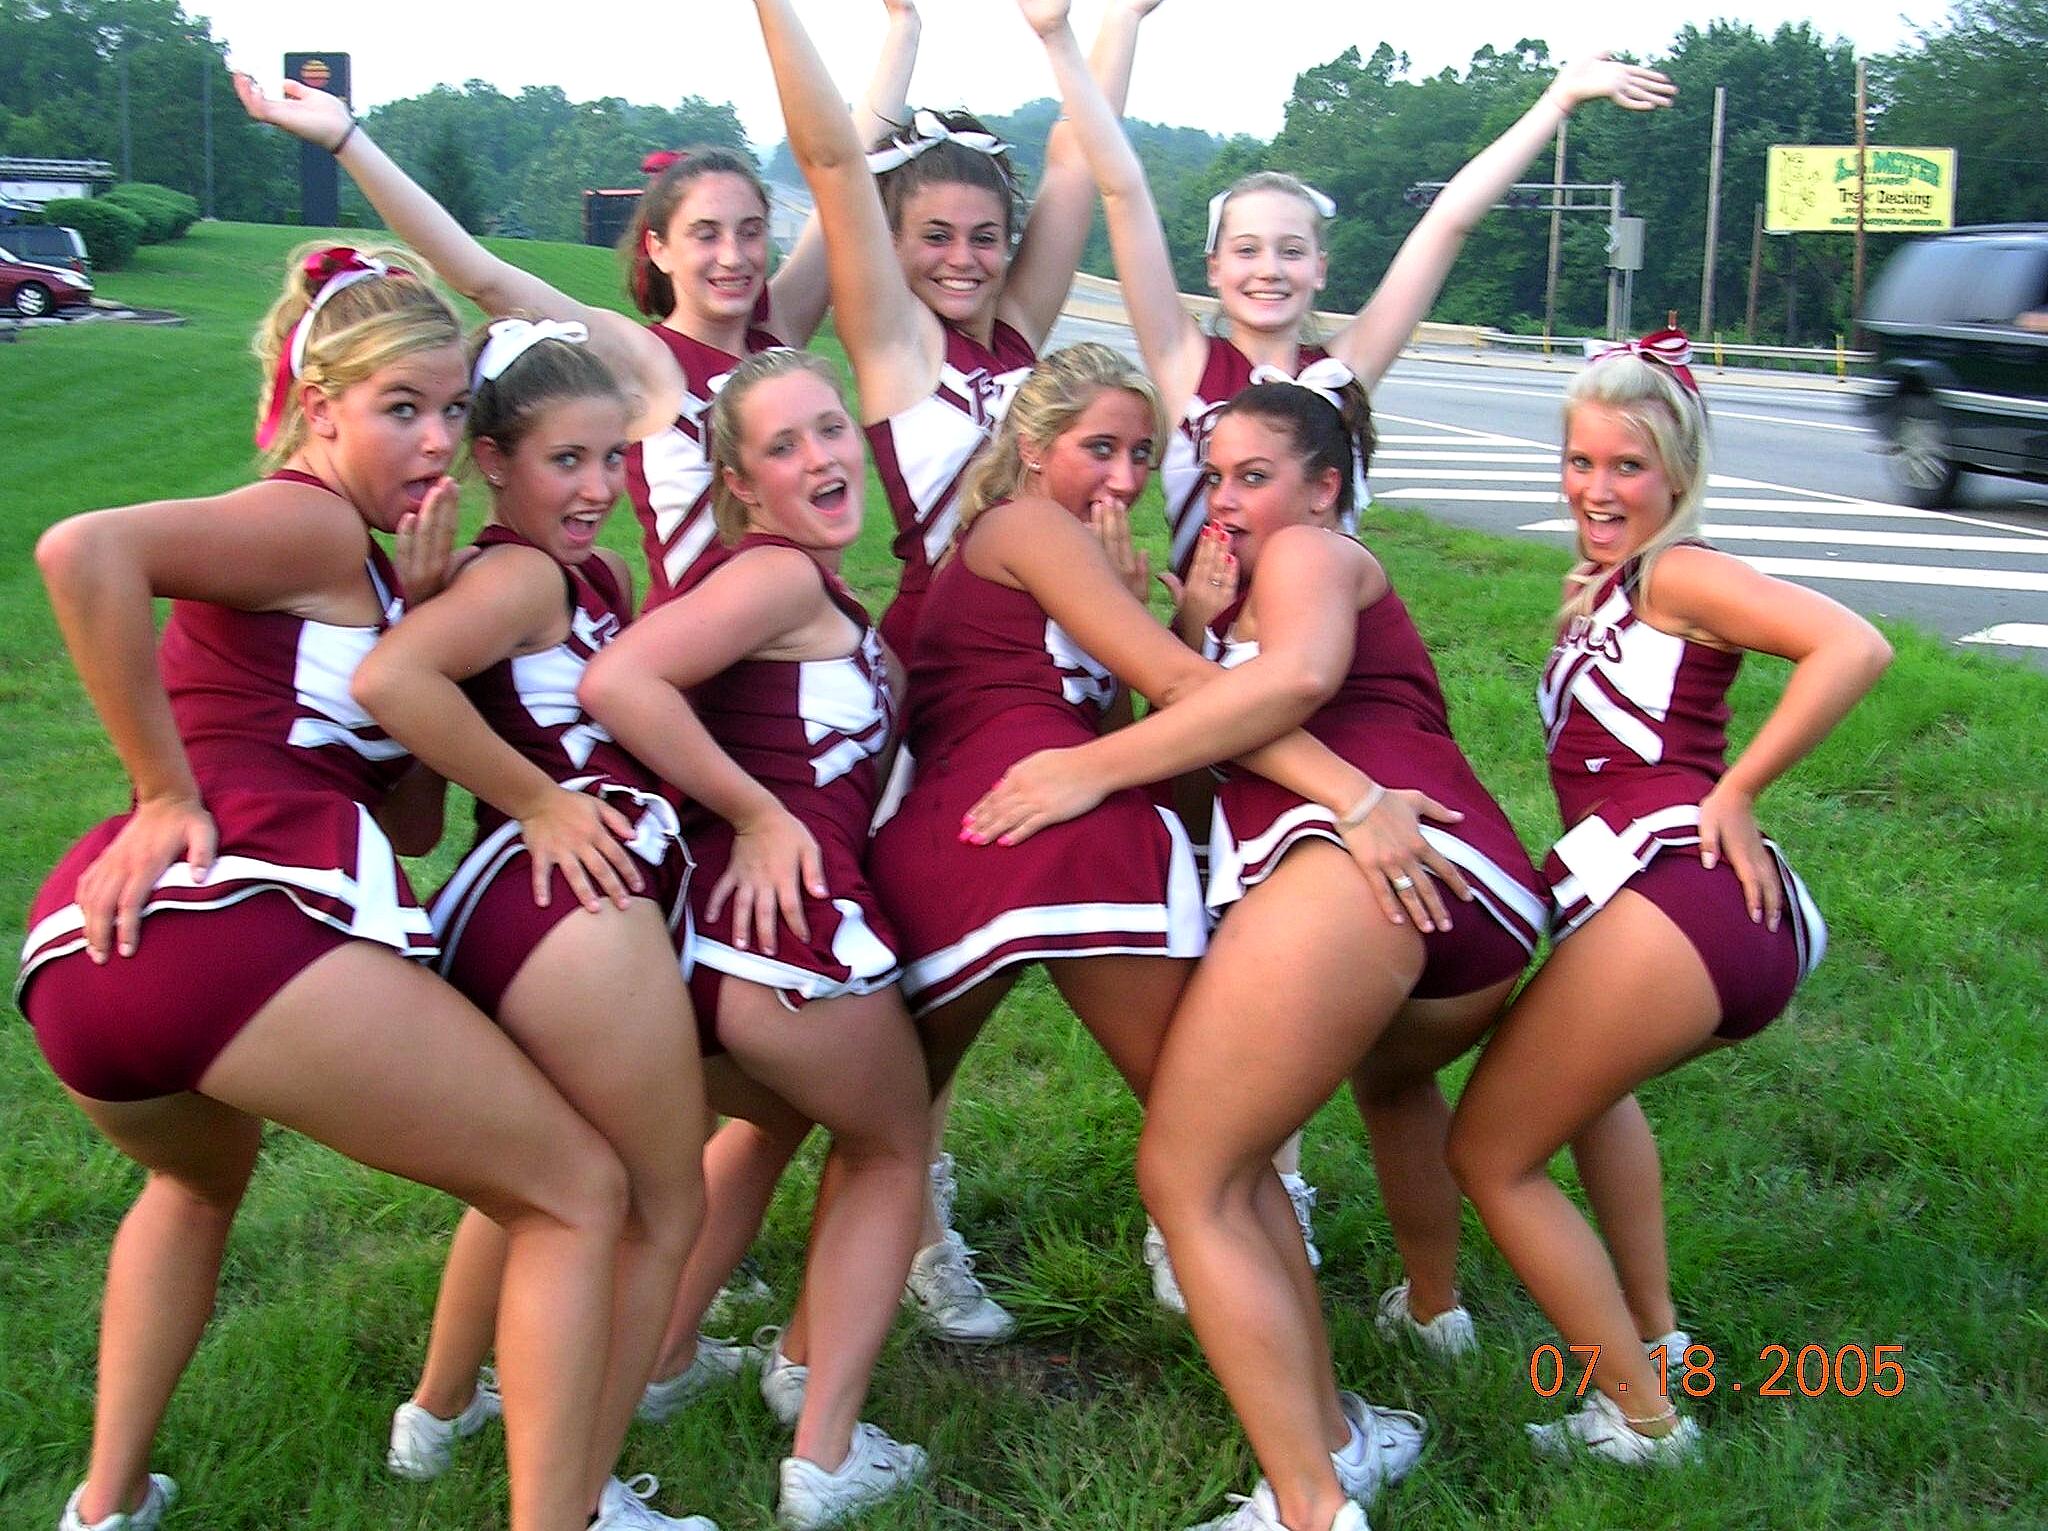 Cheerleaders upskirt pics hq photo